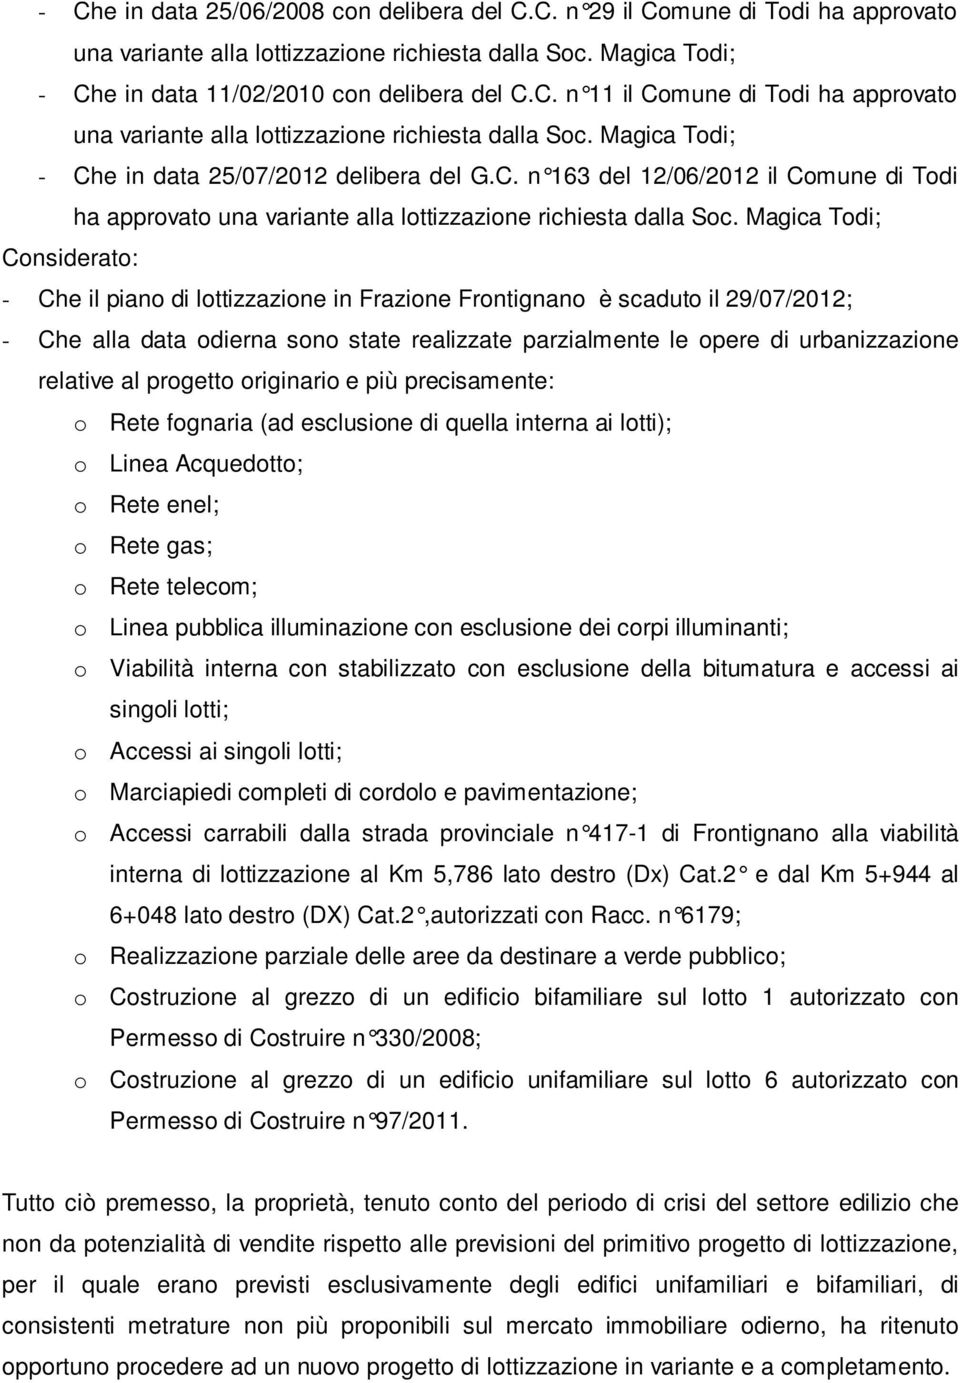 Magica Todi; Considerato: - Che il piano di lottizzazione in Frazione Frontignano è scaduto il 29/07/2012; - Che alla data odierna sono state realizzate parzialmente le opere di urbanizzazione